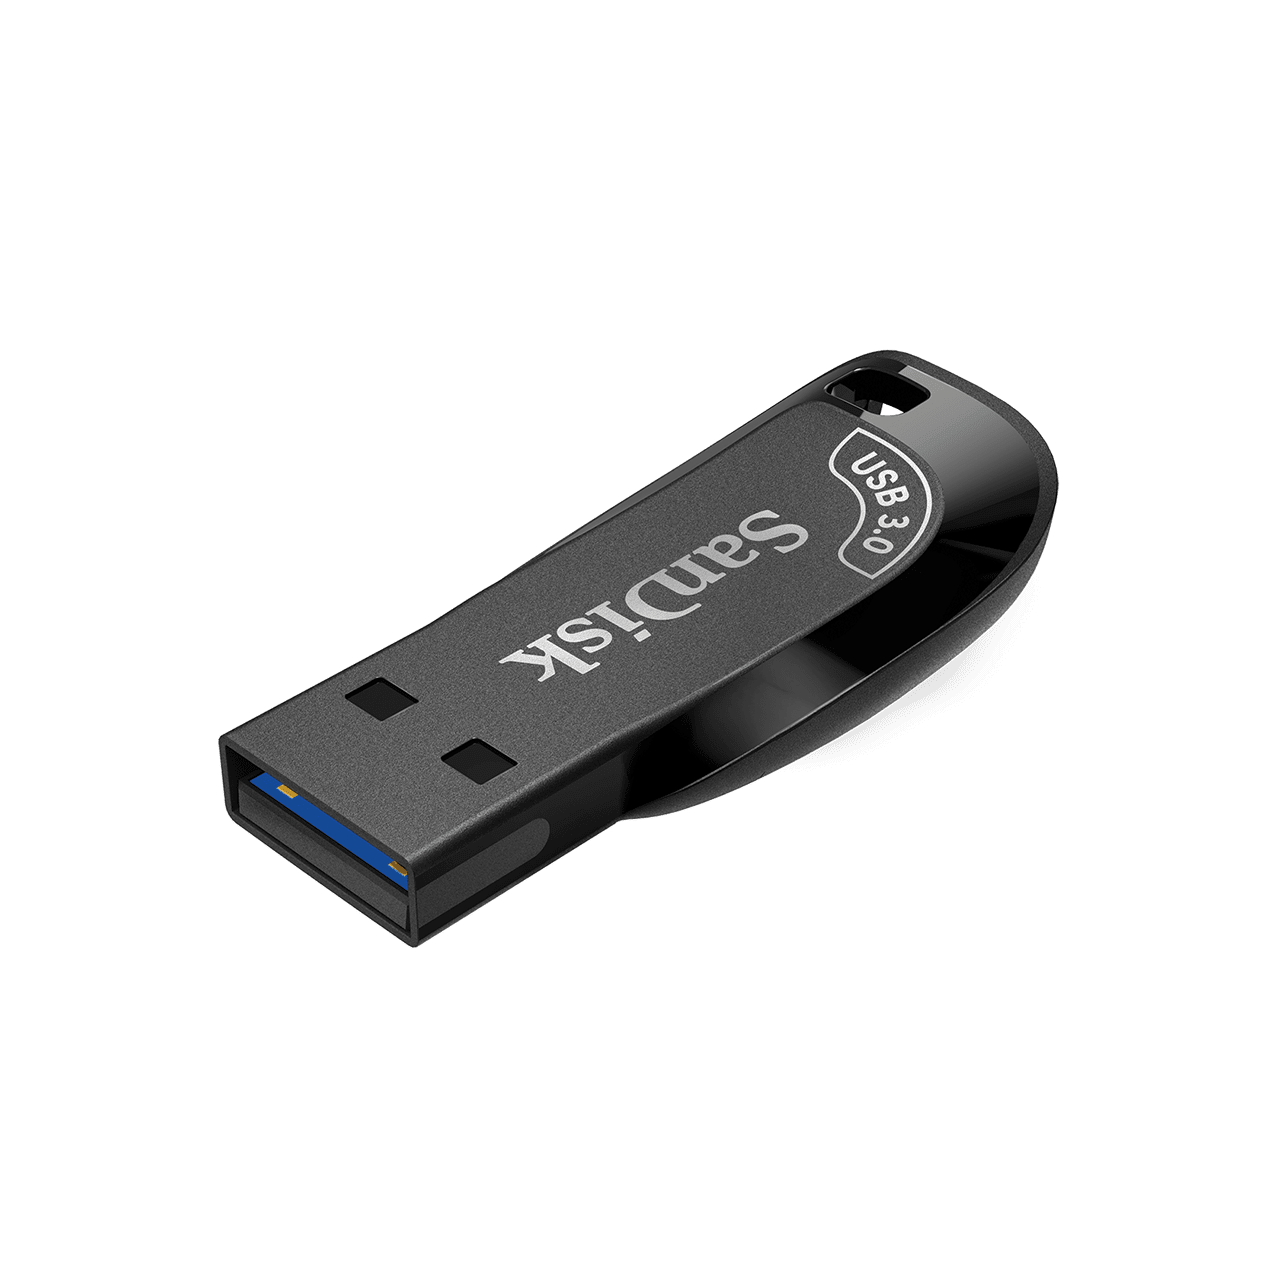 SDCZ410-0128G-G46 # SanDisk 128 GB ULTRA SHIFT USB 3.0 BLACK Mobile Disk Drive